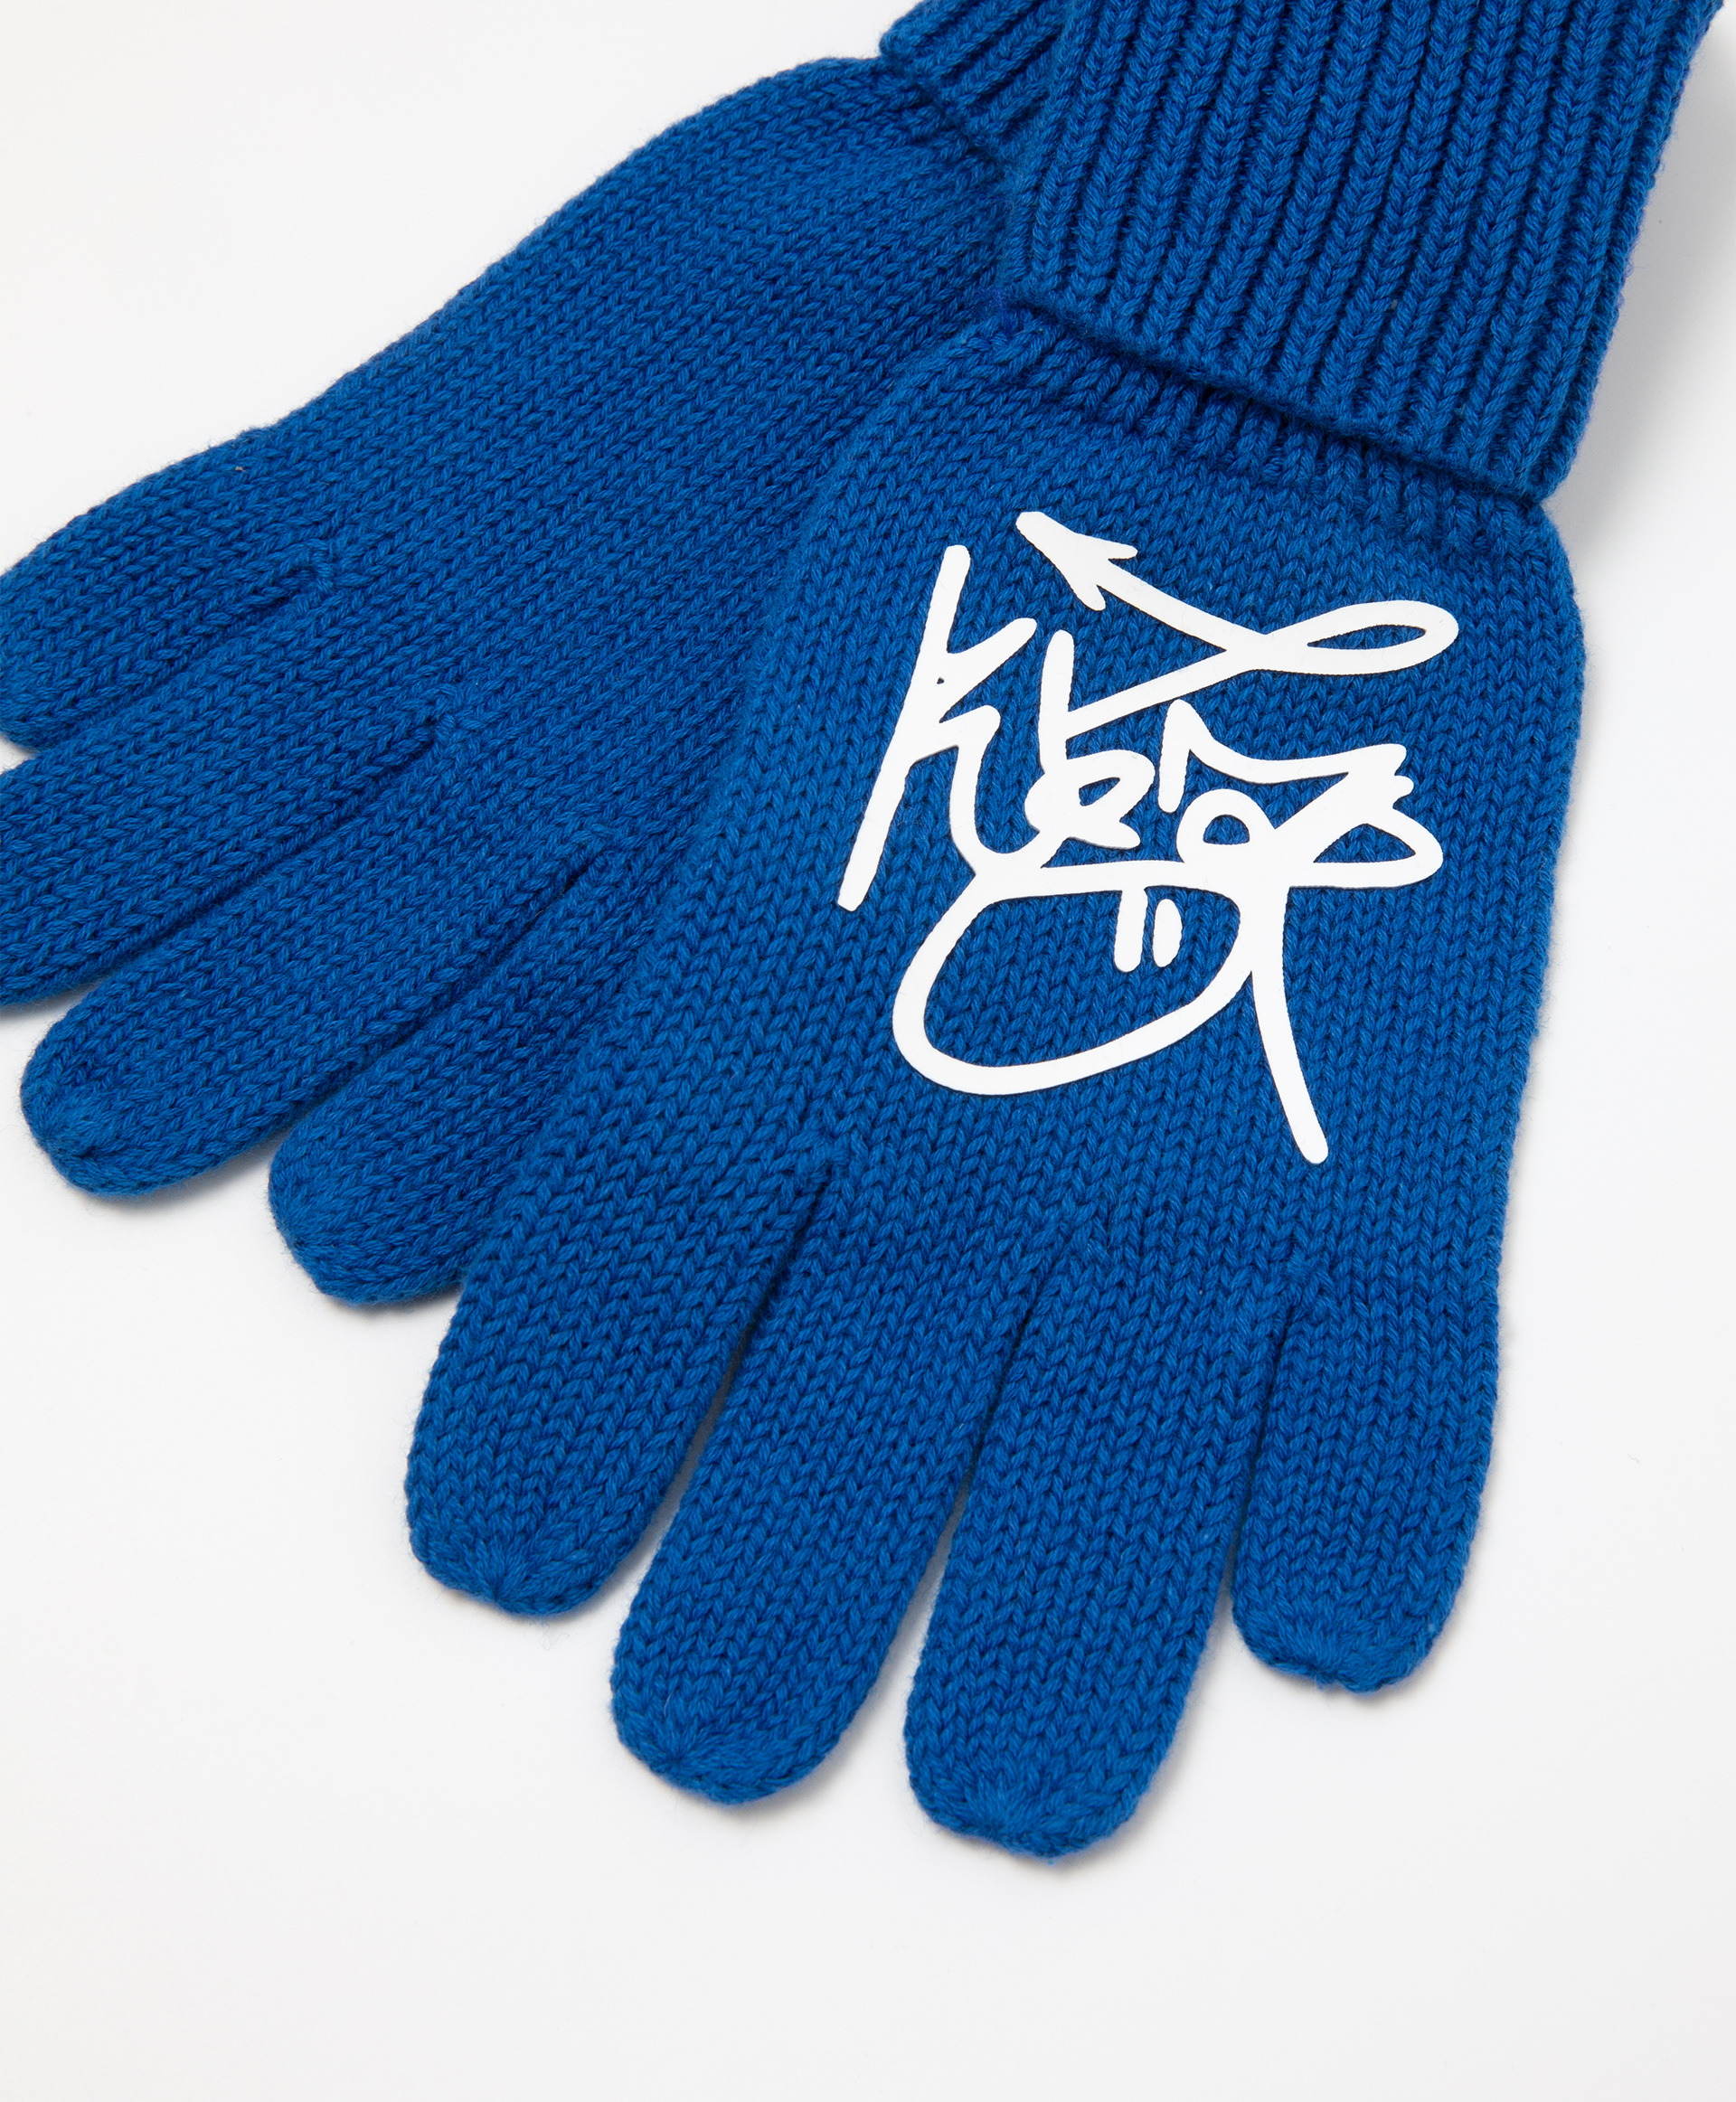 Перчатки вязаные с крупным шрифтовым принтом Gulliver 22206BMC7607, размер 12, цвет синий - фото 3